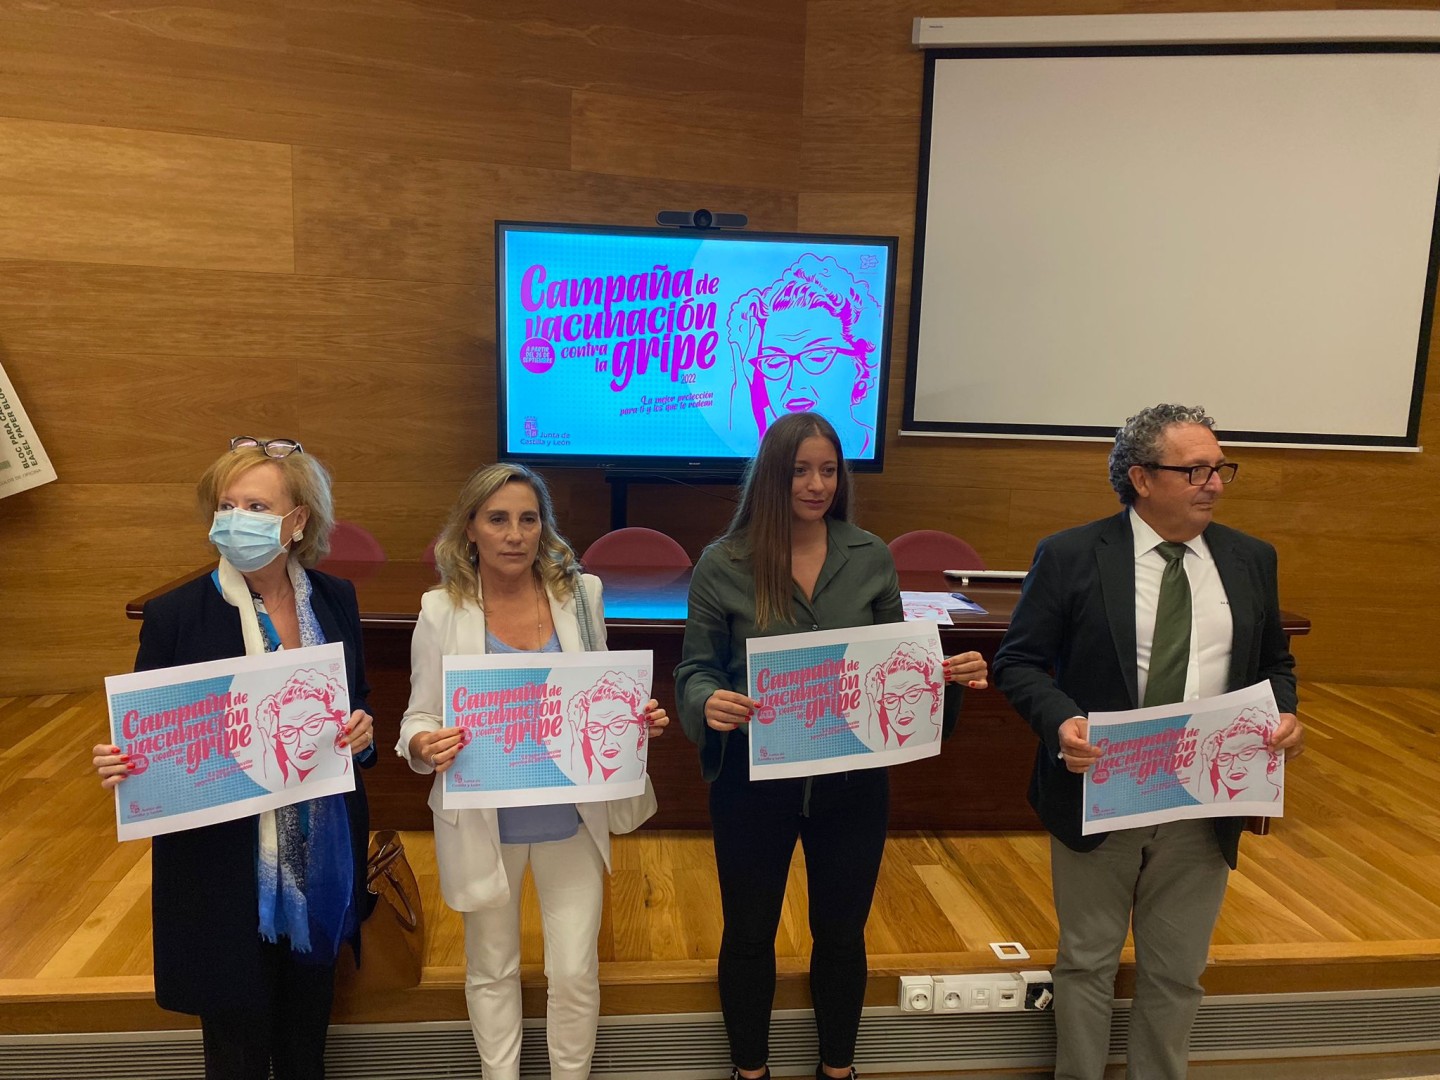 Presentación de la campaña de vacunación contra la gripe en la provincia de León